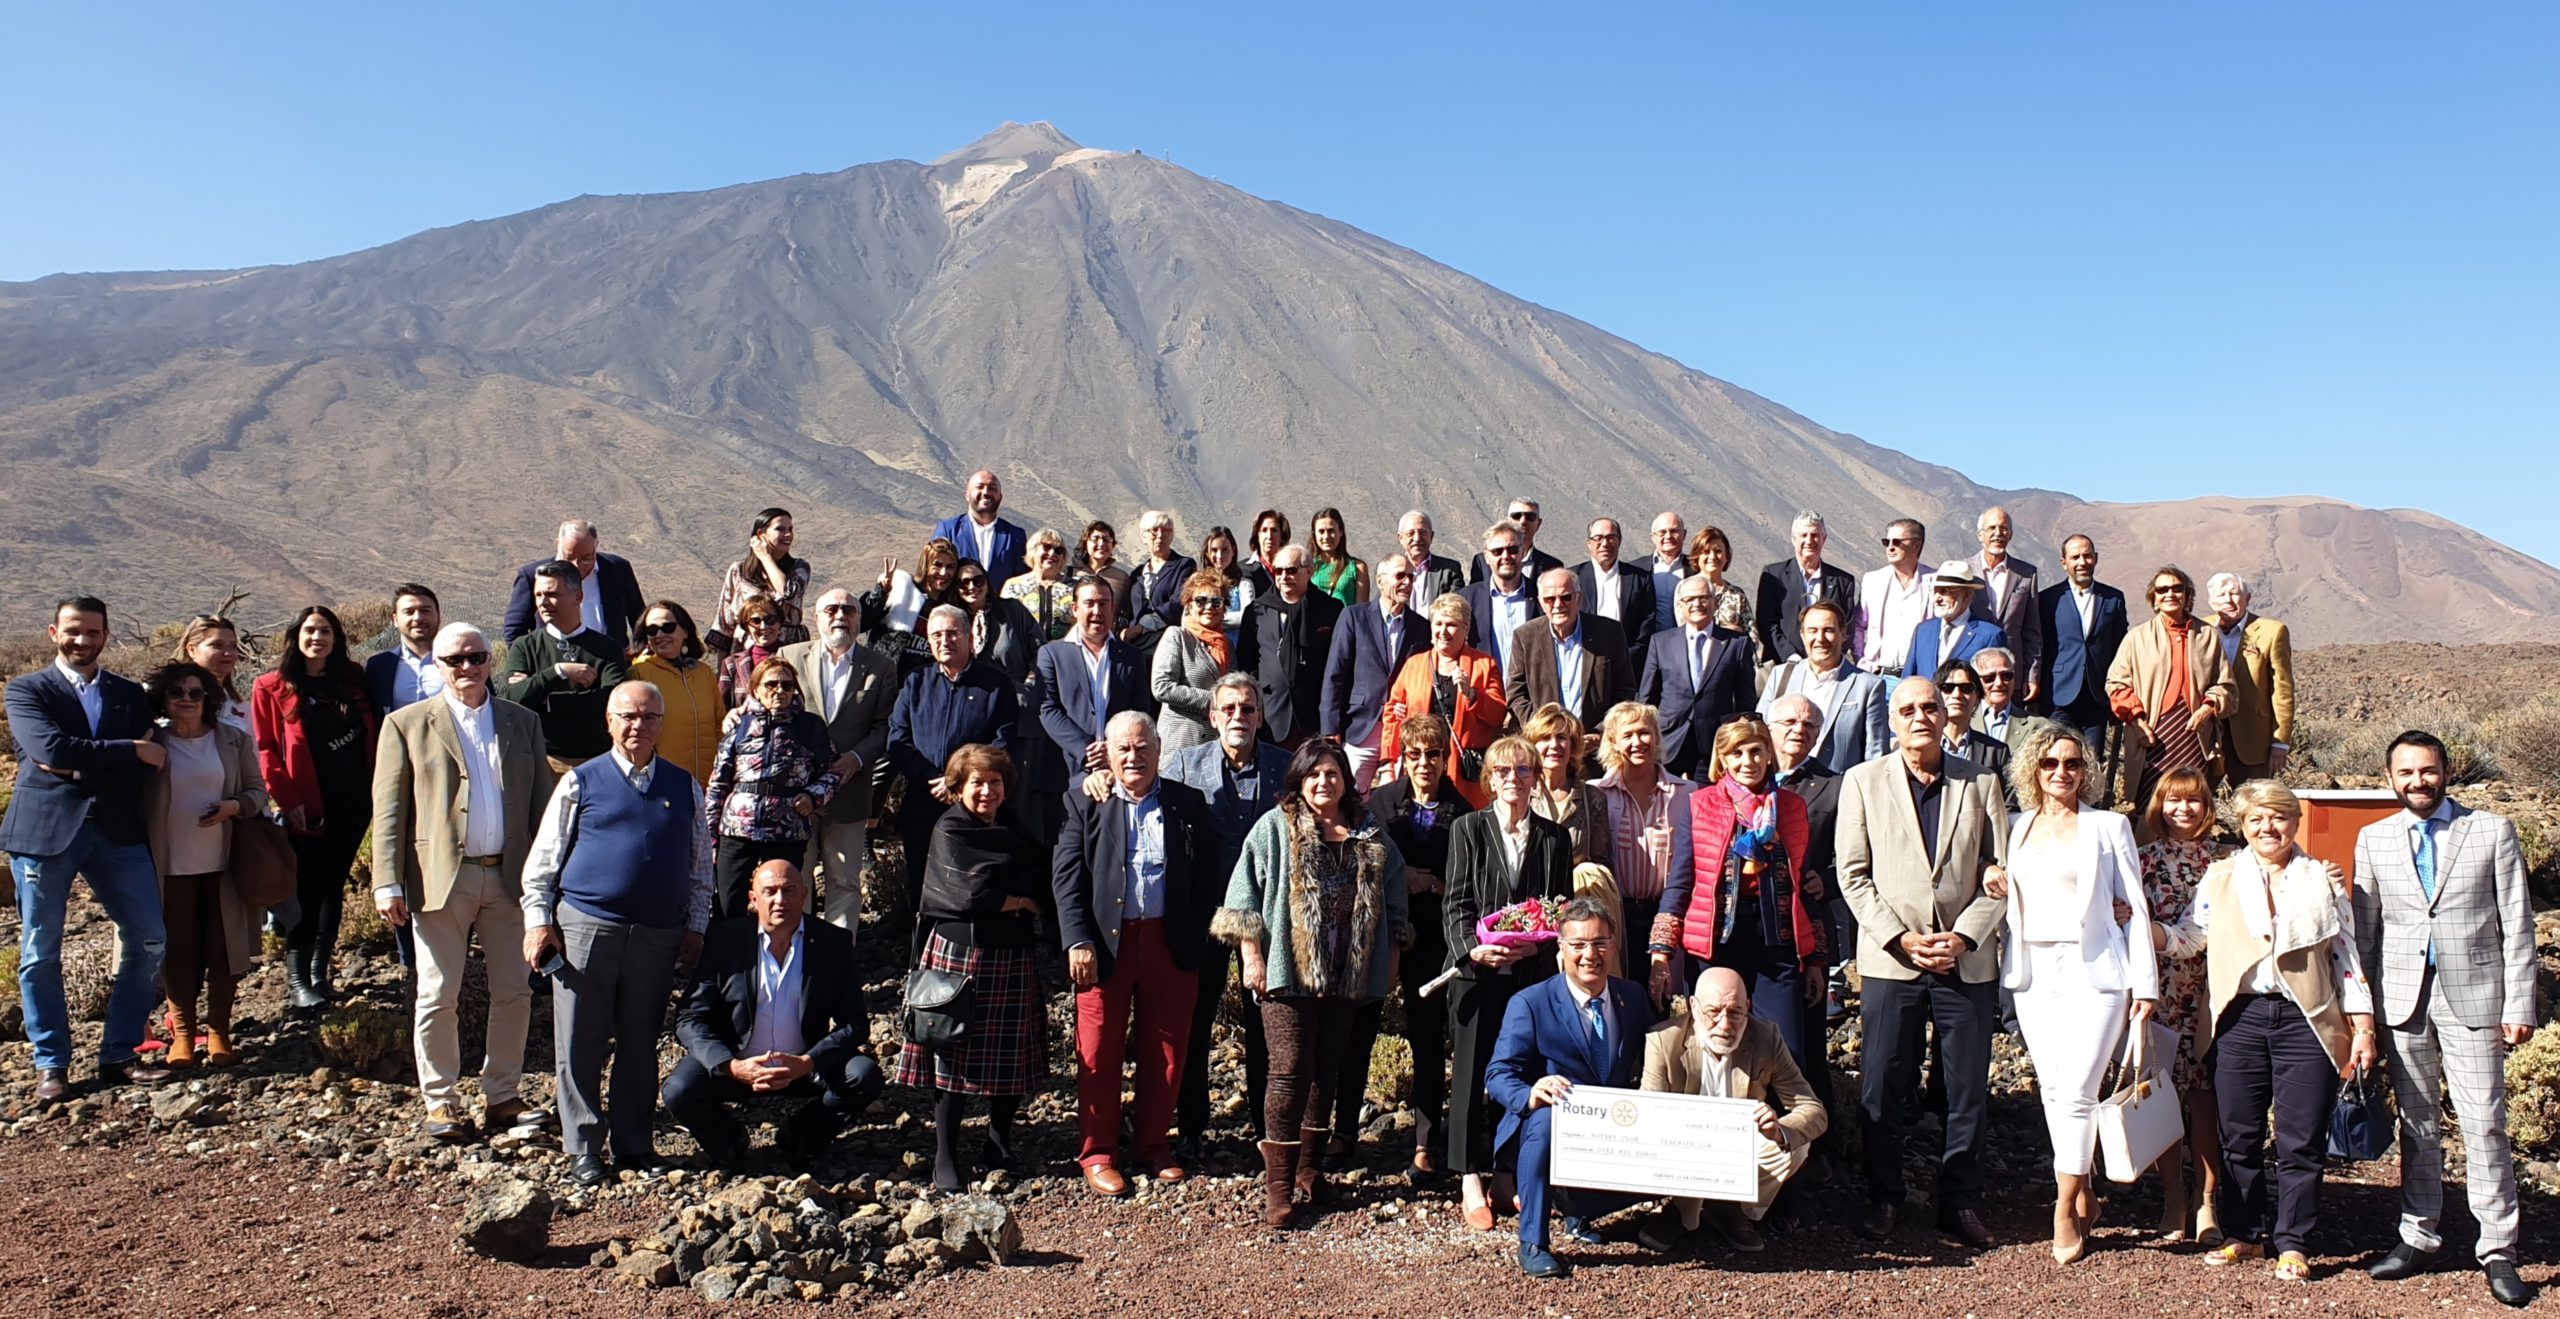 Los rotarios de Tenerife celebran el 115 aniversario de Rotary y donan 10.000€ a tres organizaciones sociales de la isla.